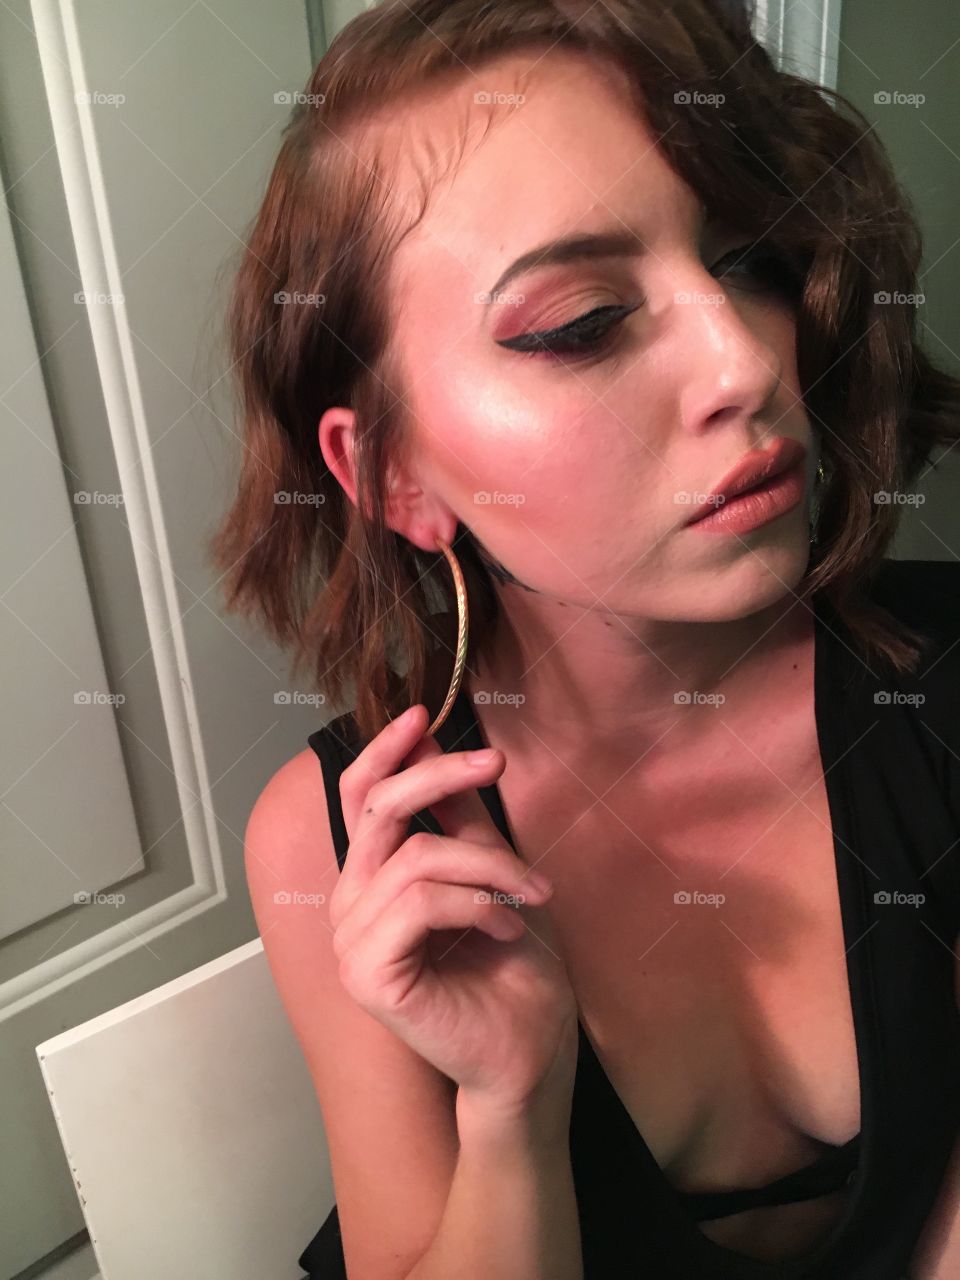 Makeup 